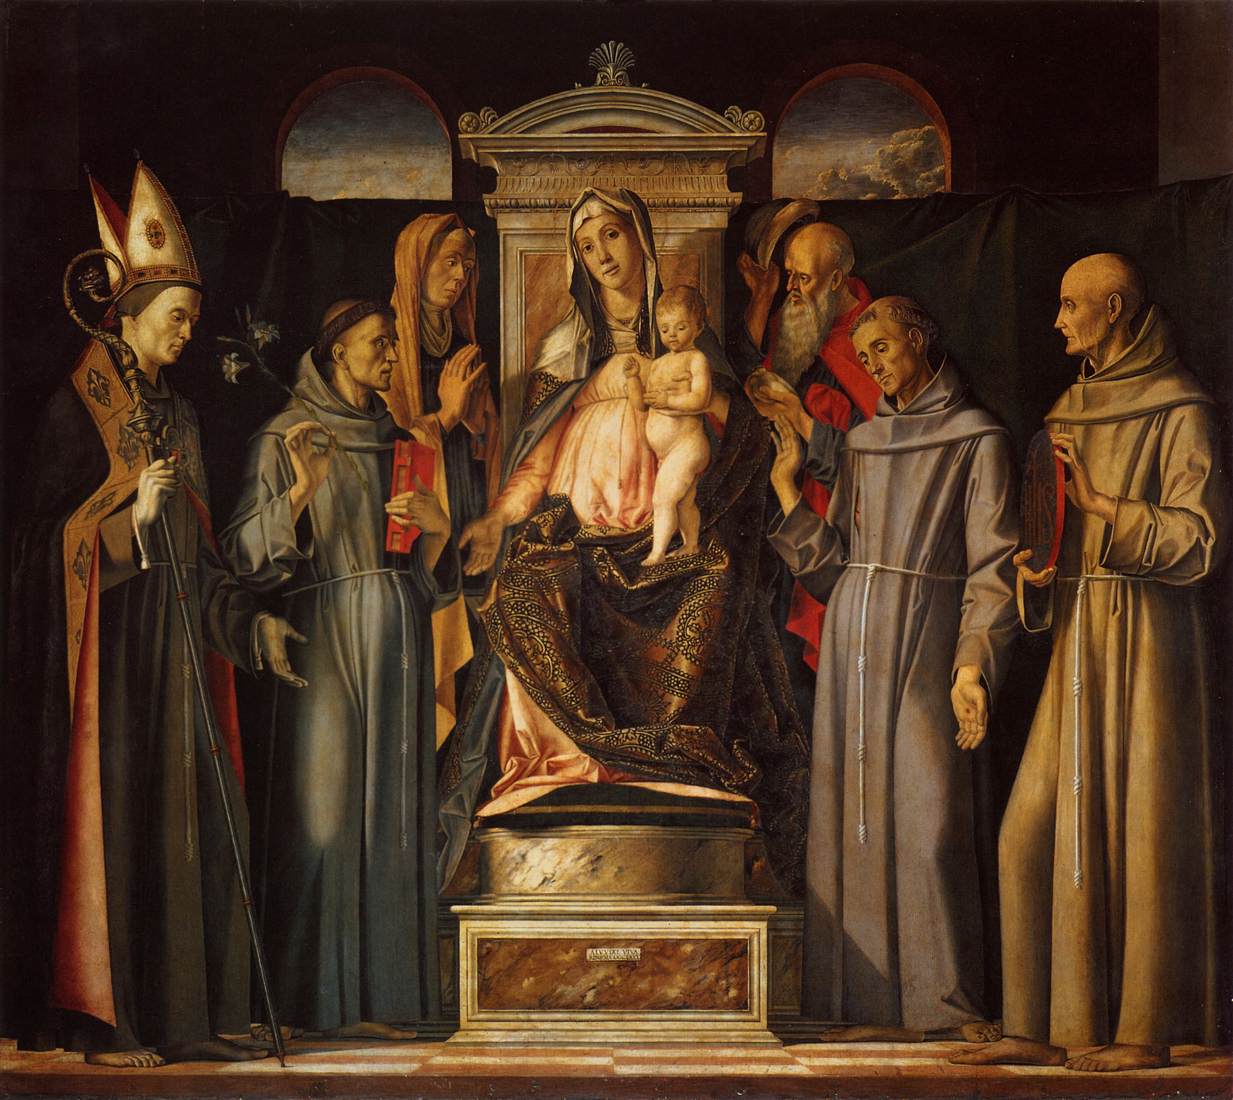 La Vergine e il bambino in trono dei santi (Sacra Converszeone)